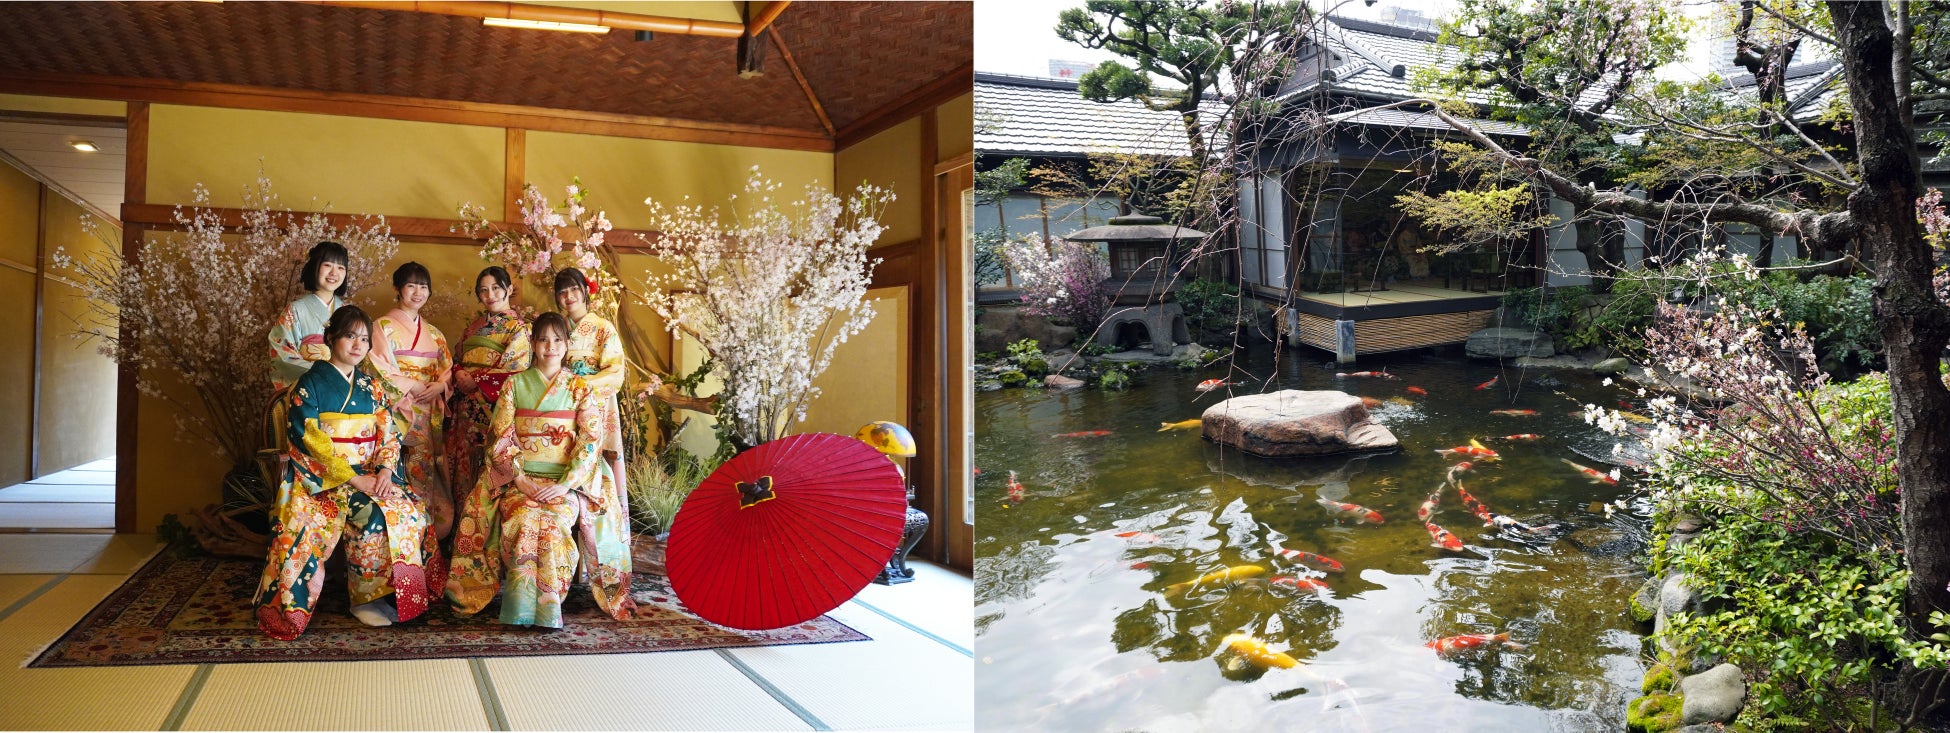 つきじ治作の美しい日本庭園